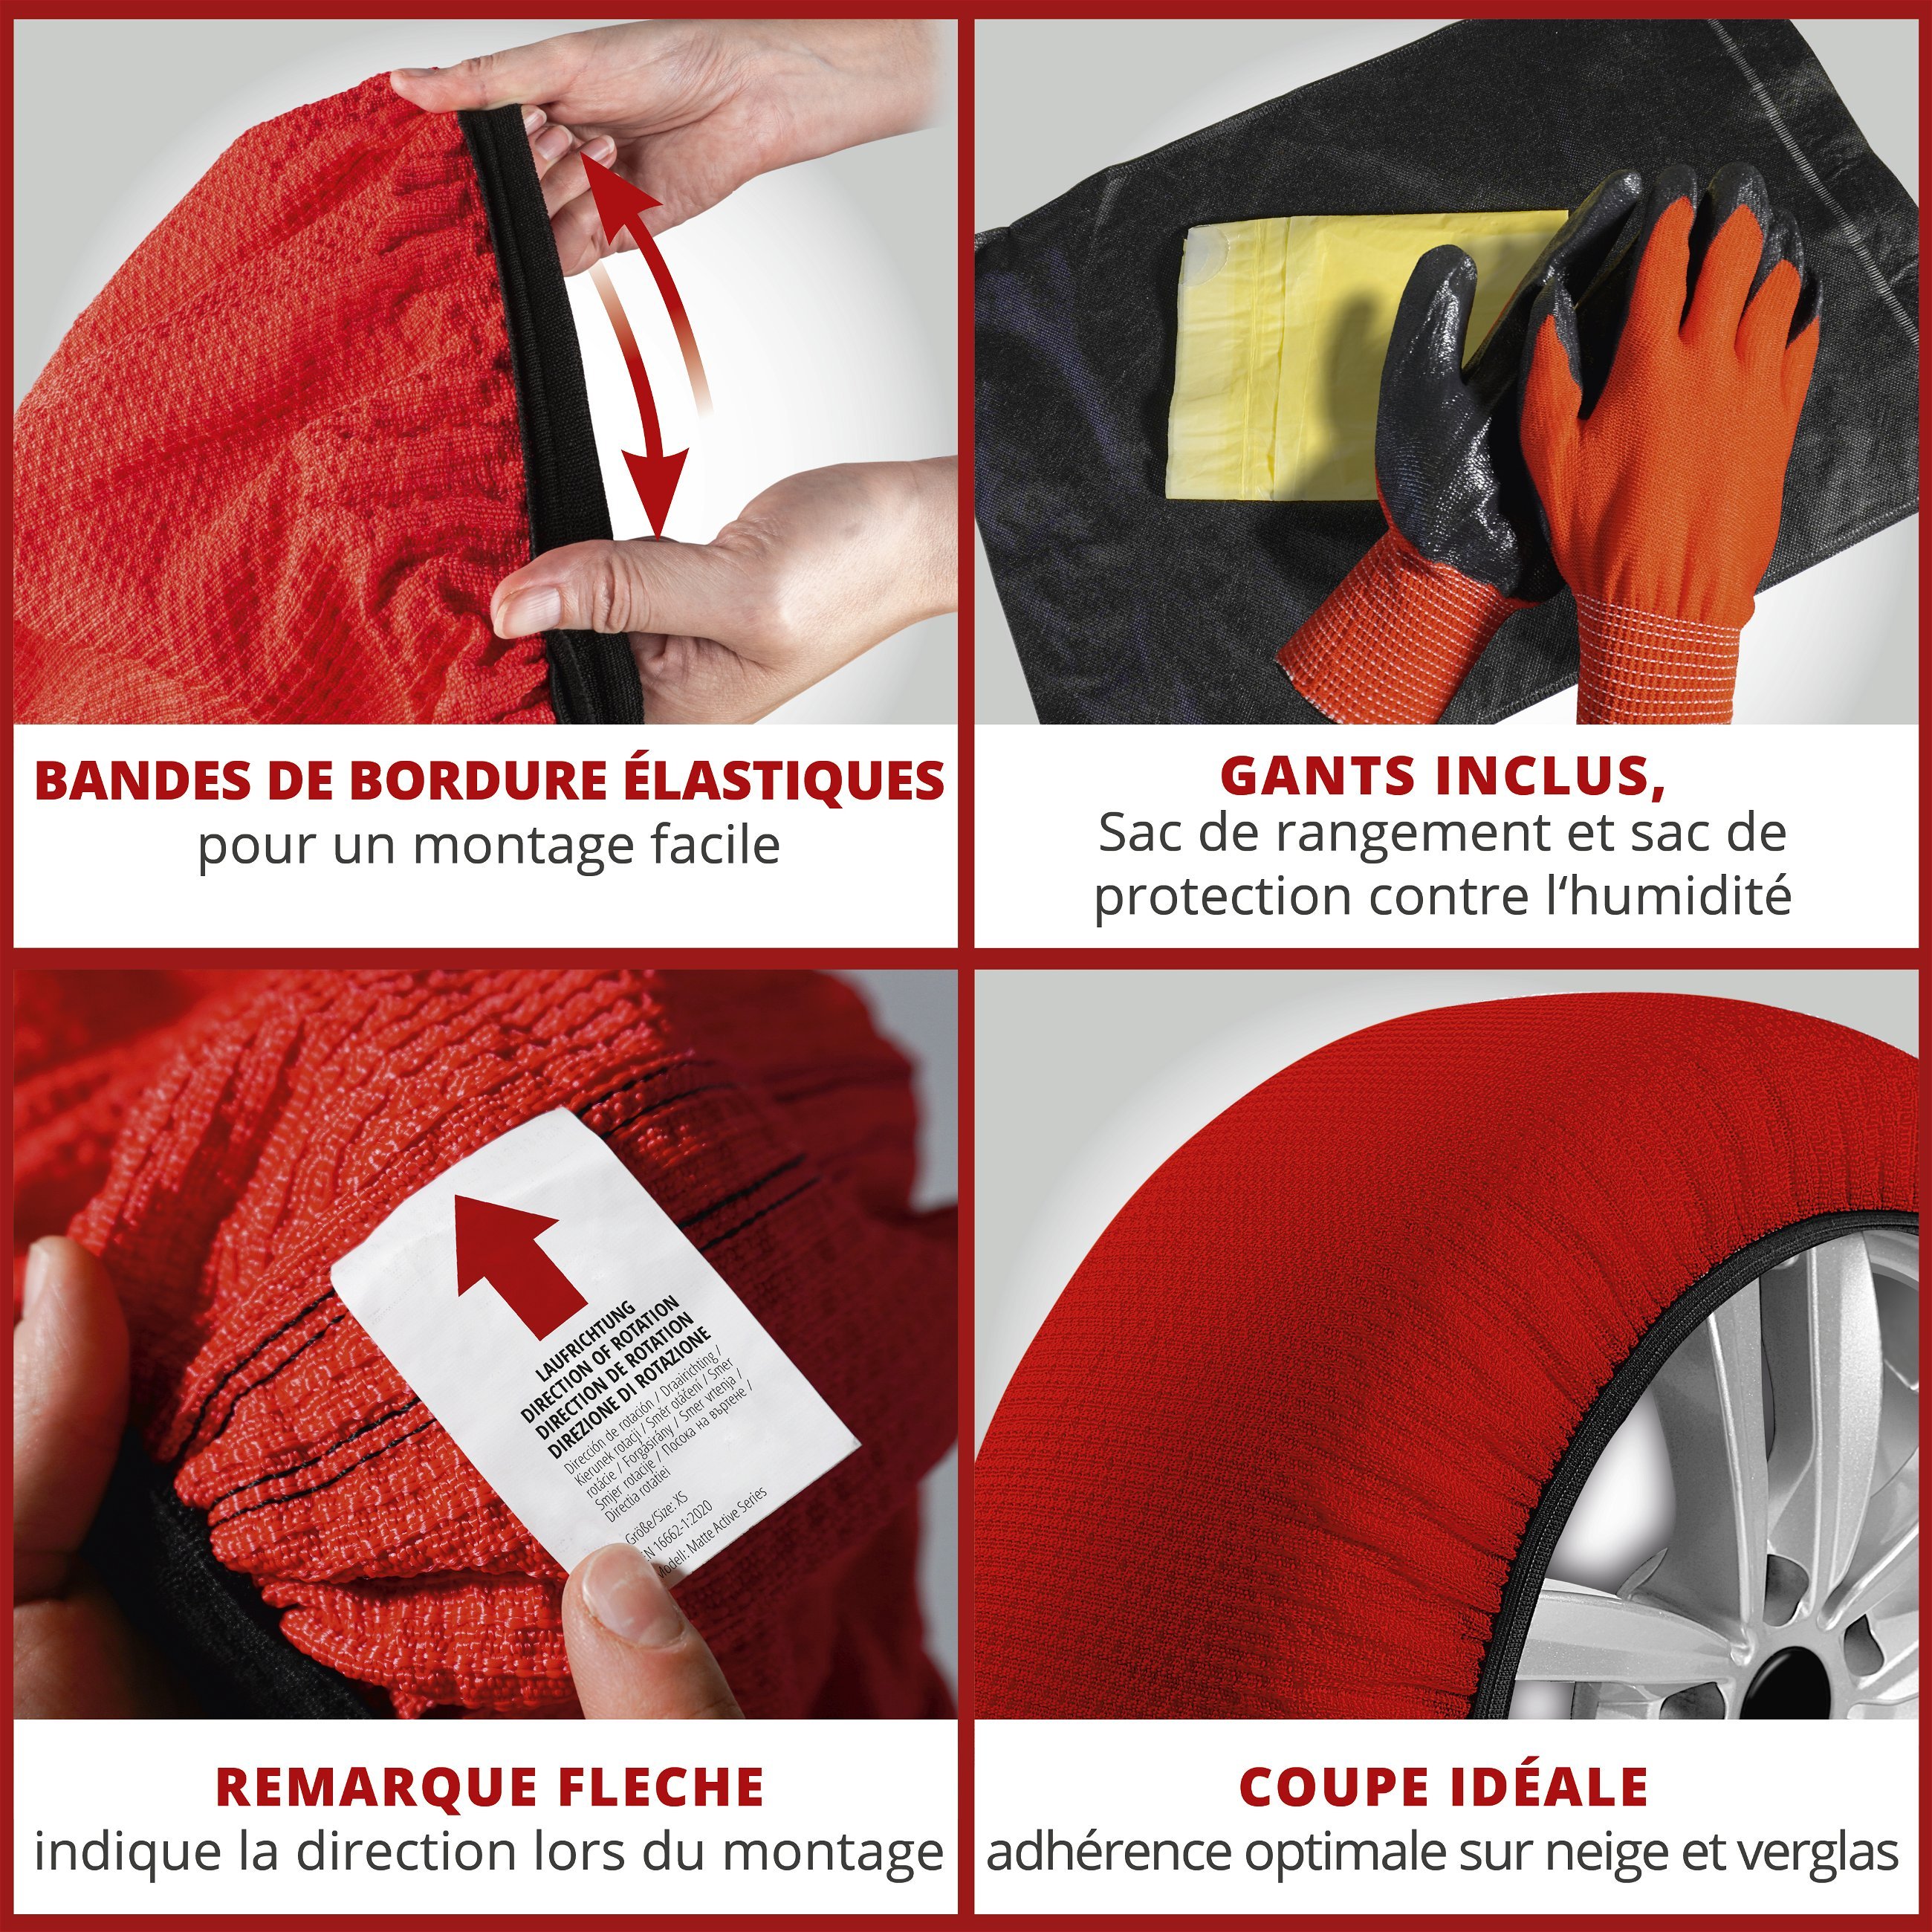 Basic chaînes à neige Alternative Active XL, chaînes à neige textiles, chaussettes à neige set de 2 pièces rouge